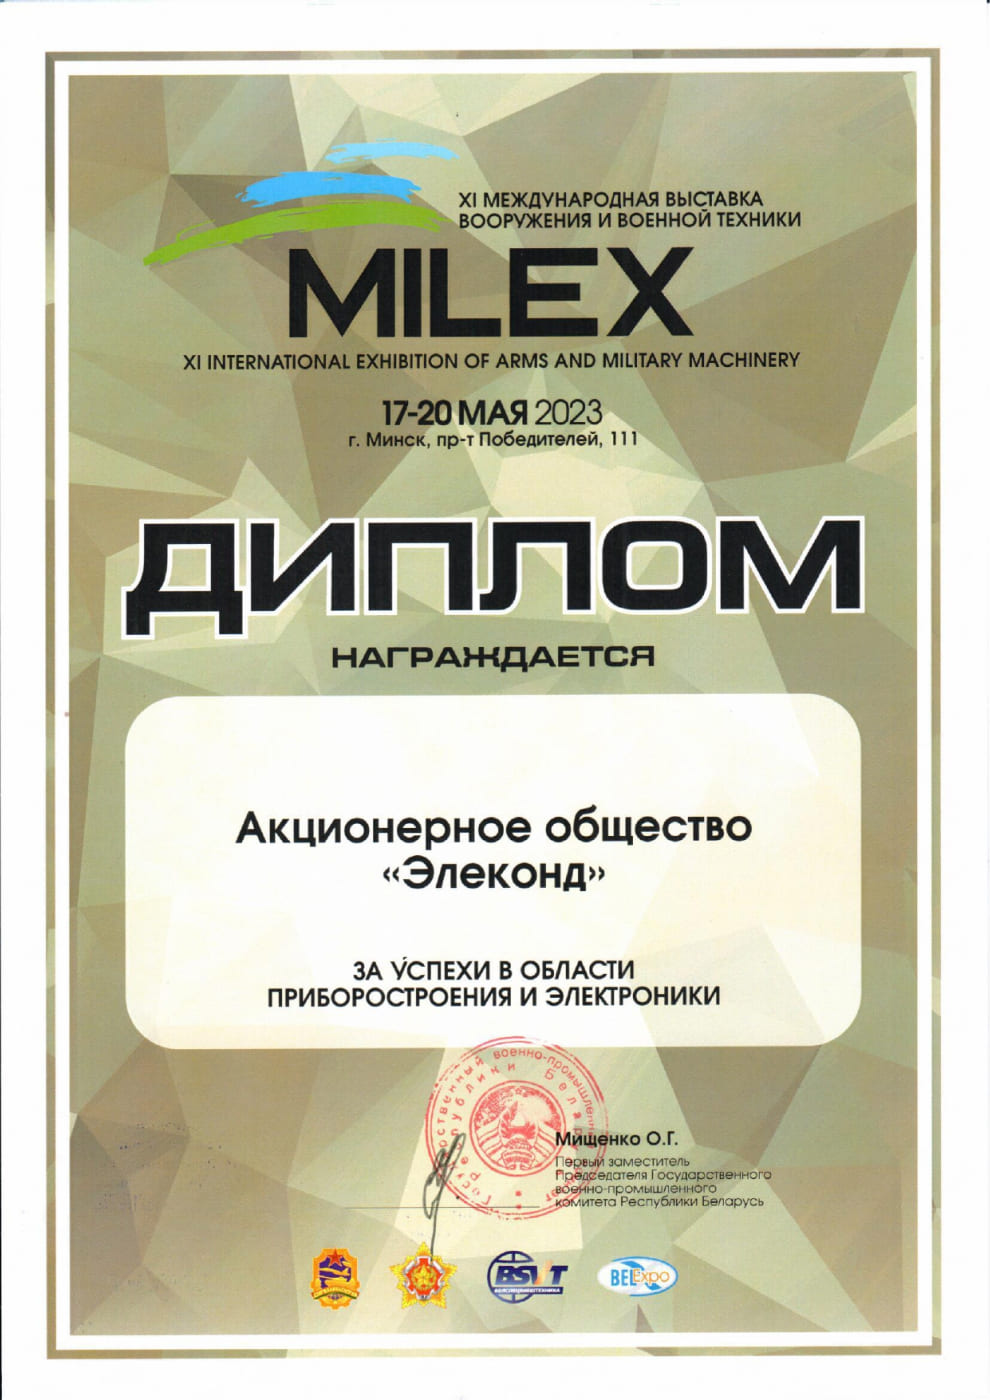 Сертификат участника в международной выставке “MILEX‑2023”